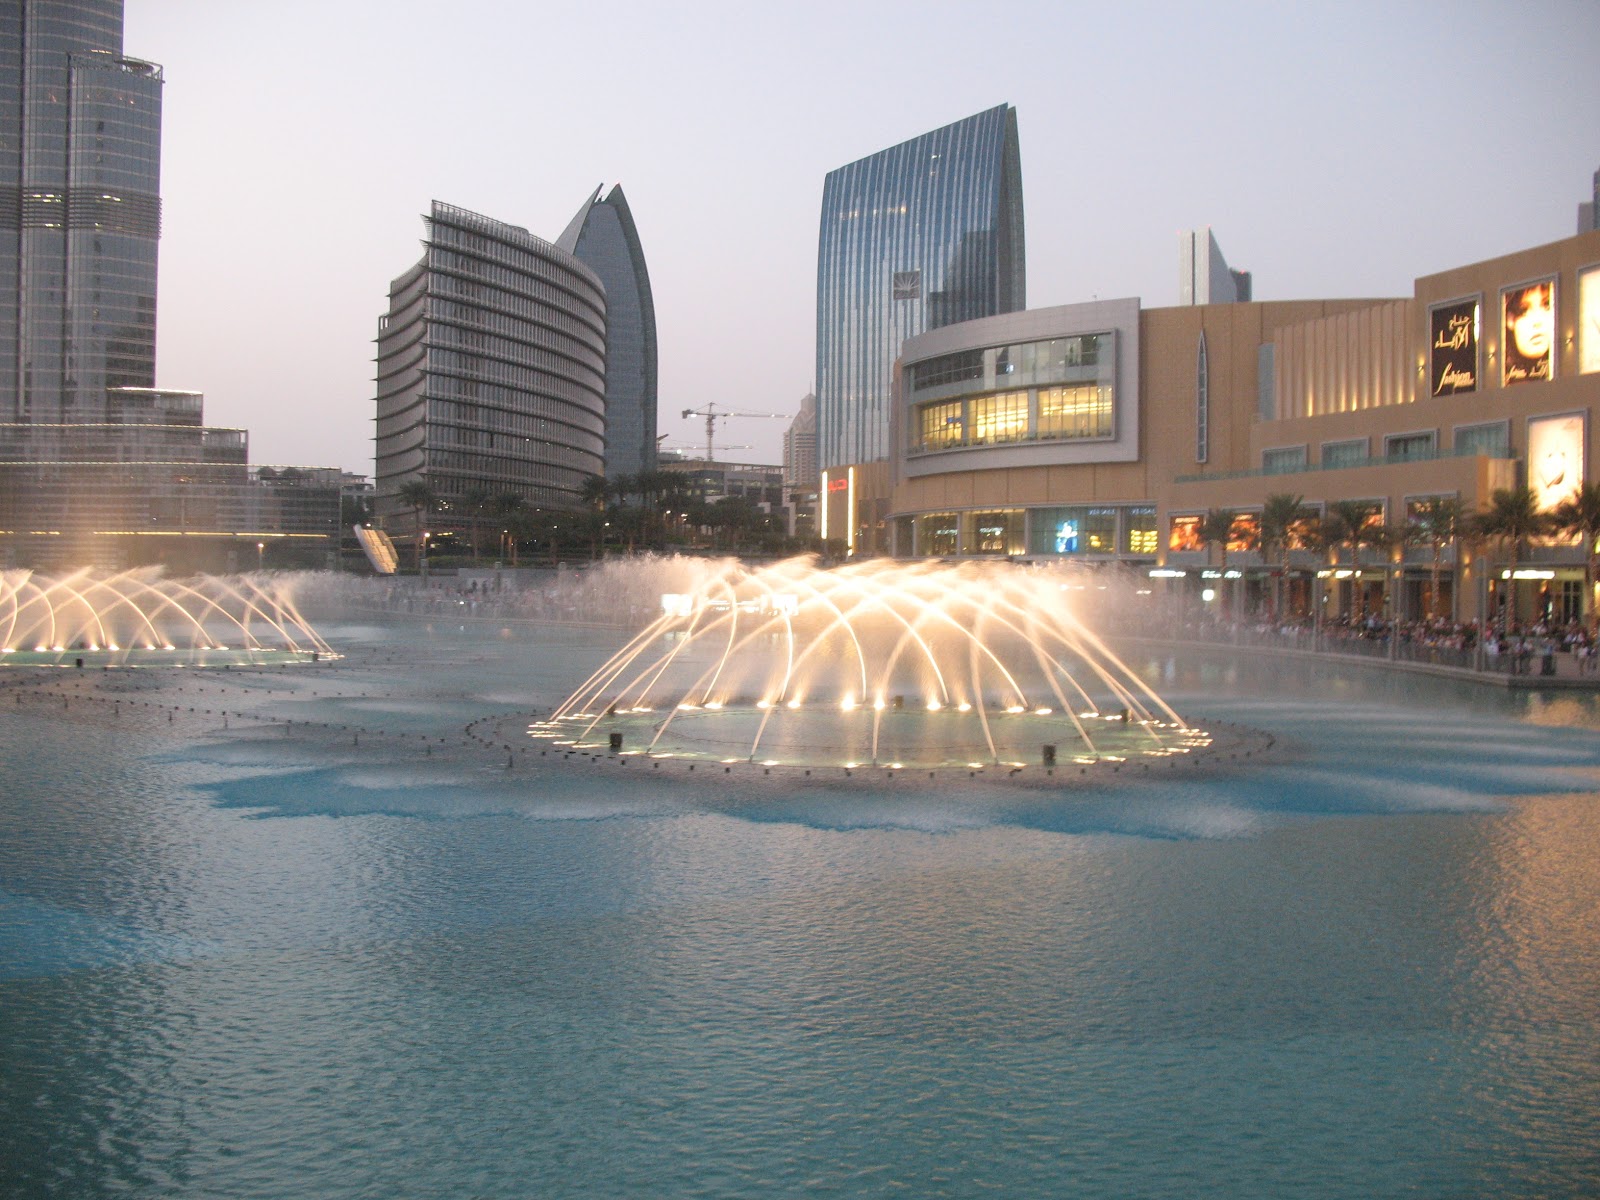 Egyptian Stories: The Dubai Fountain